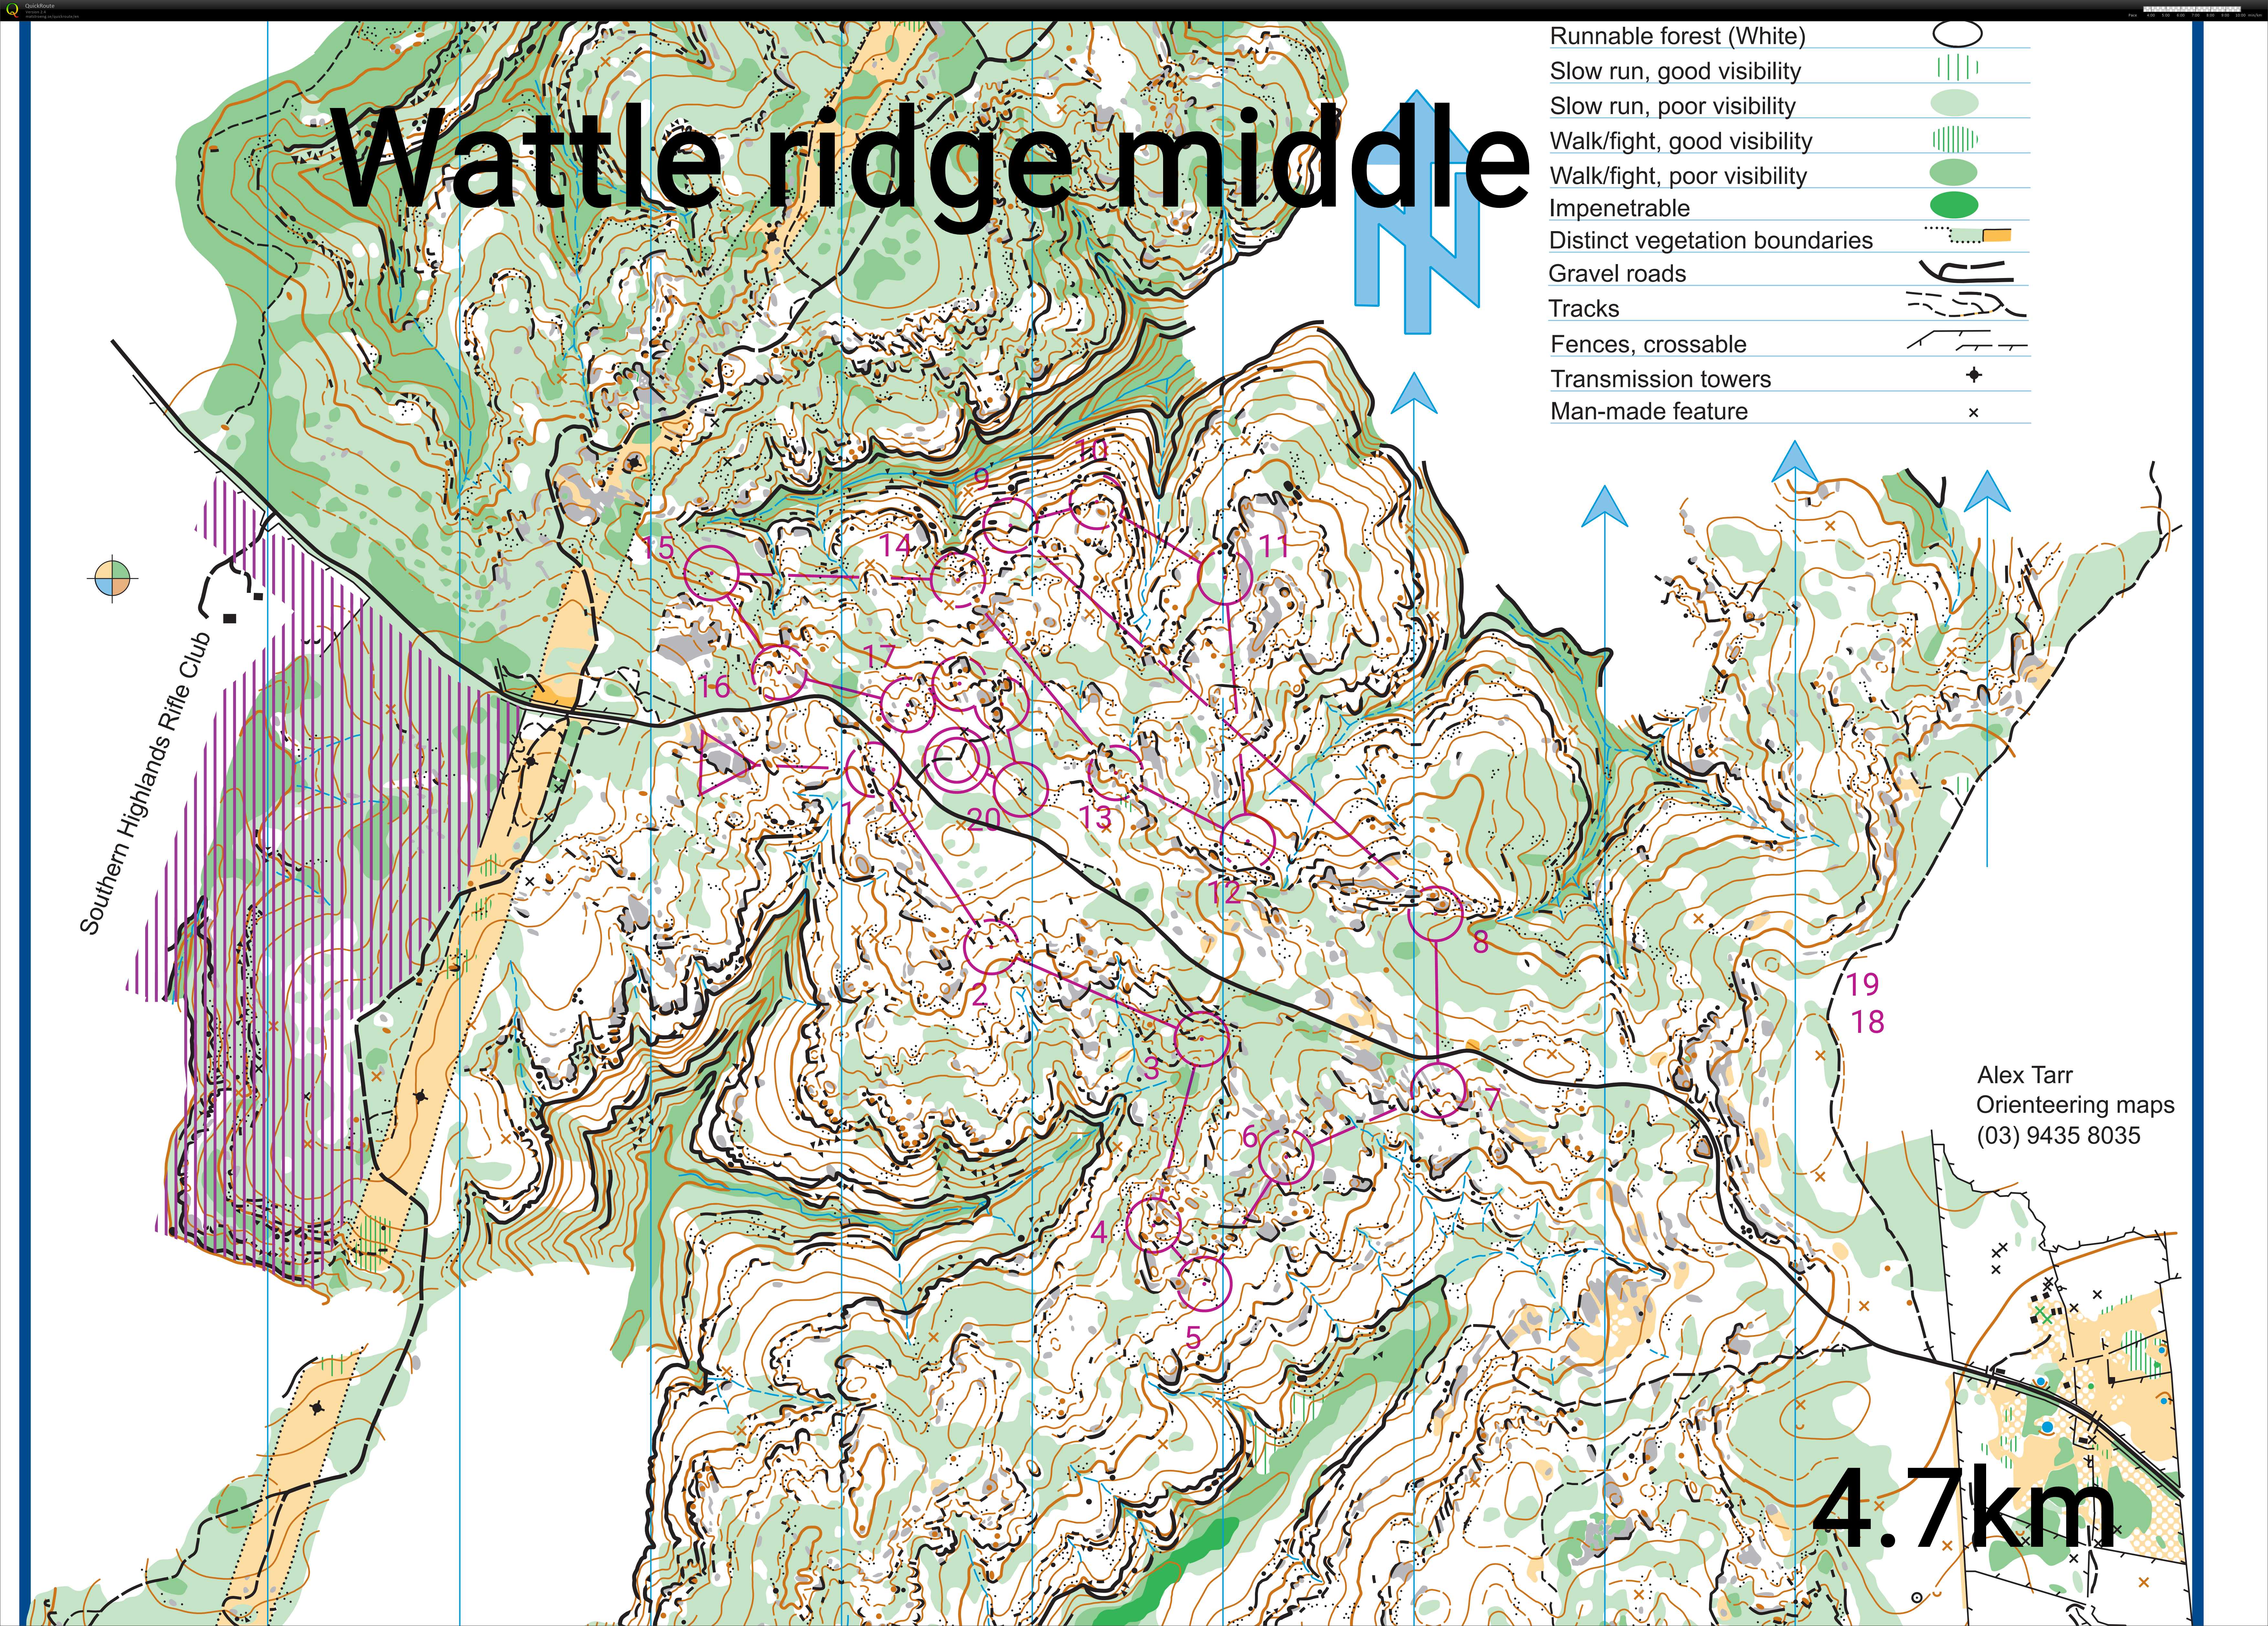 Wattle ridge middle sim (06-07-2020)